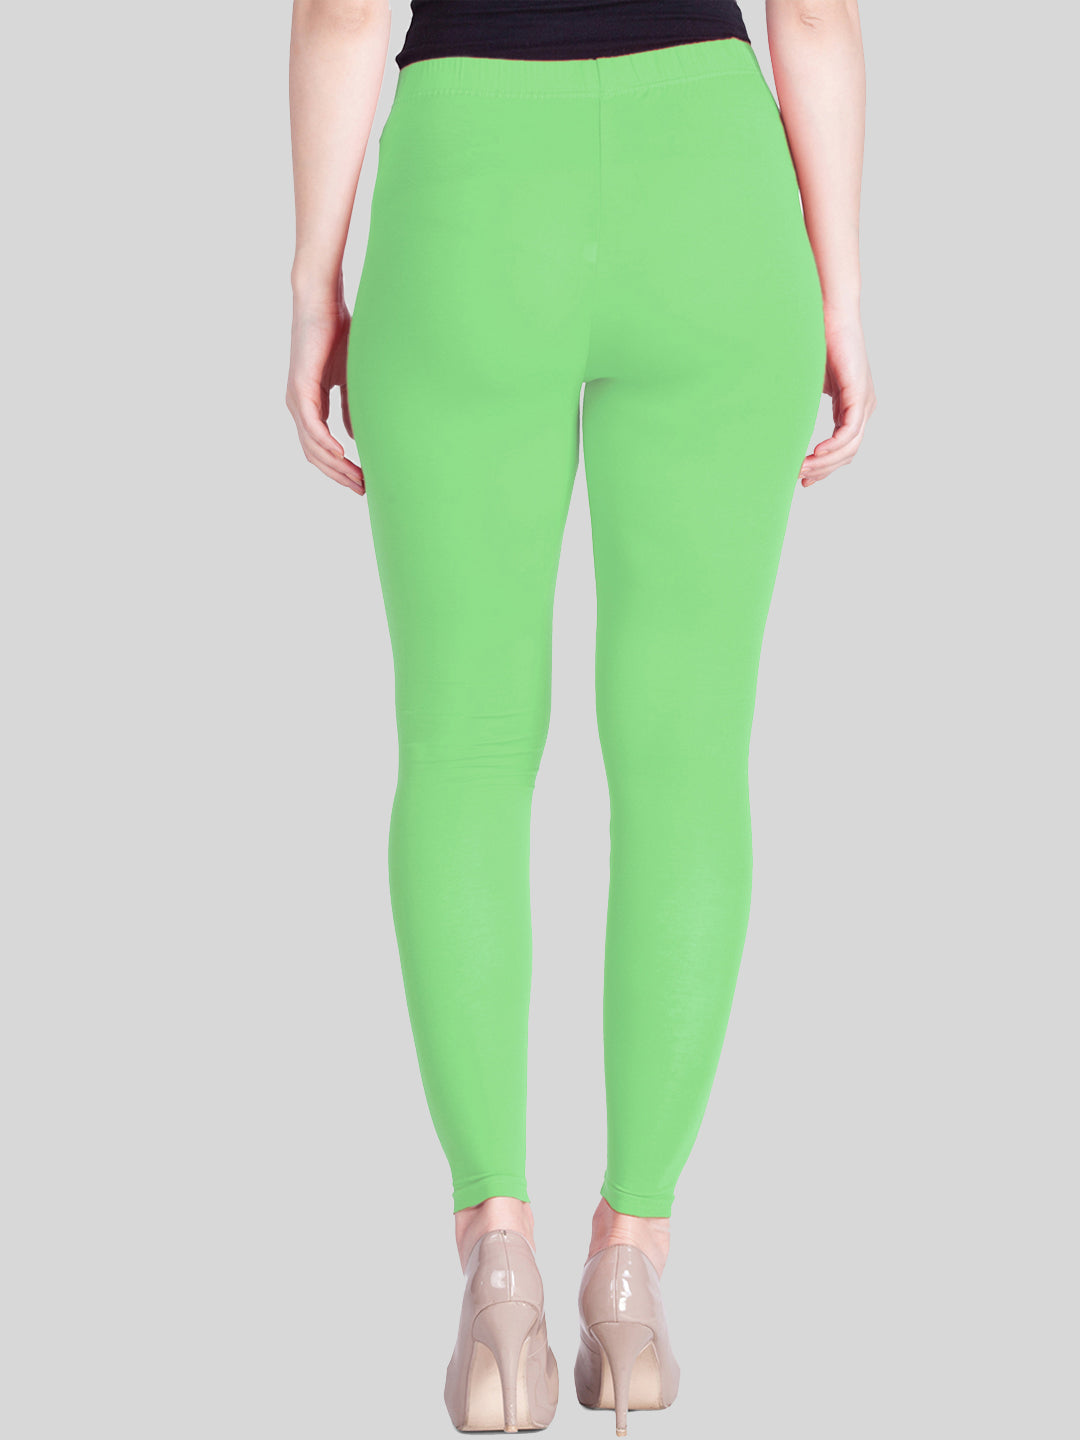 neon light green solid color leggings | Zazzle | Colorful leggings, Neon  outfits, Leggings fashion